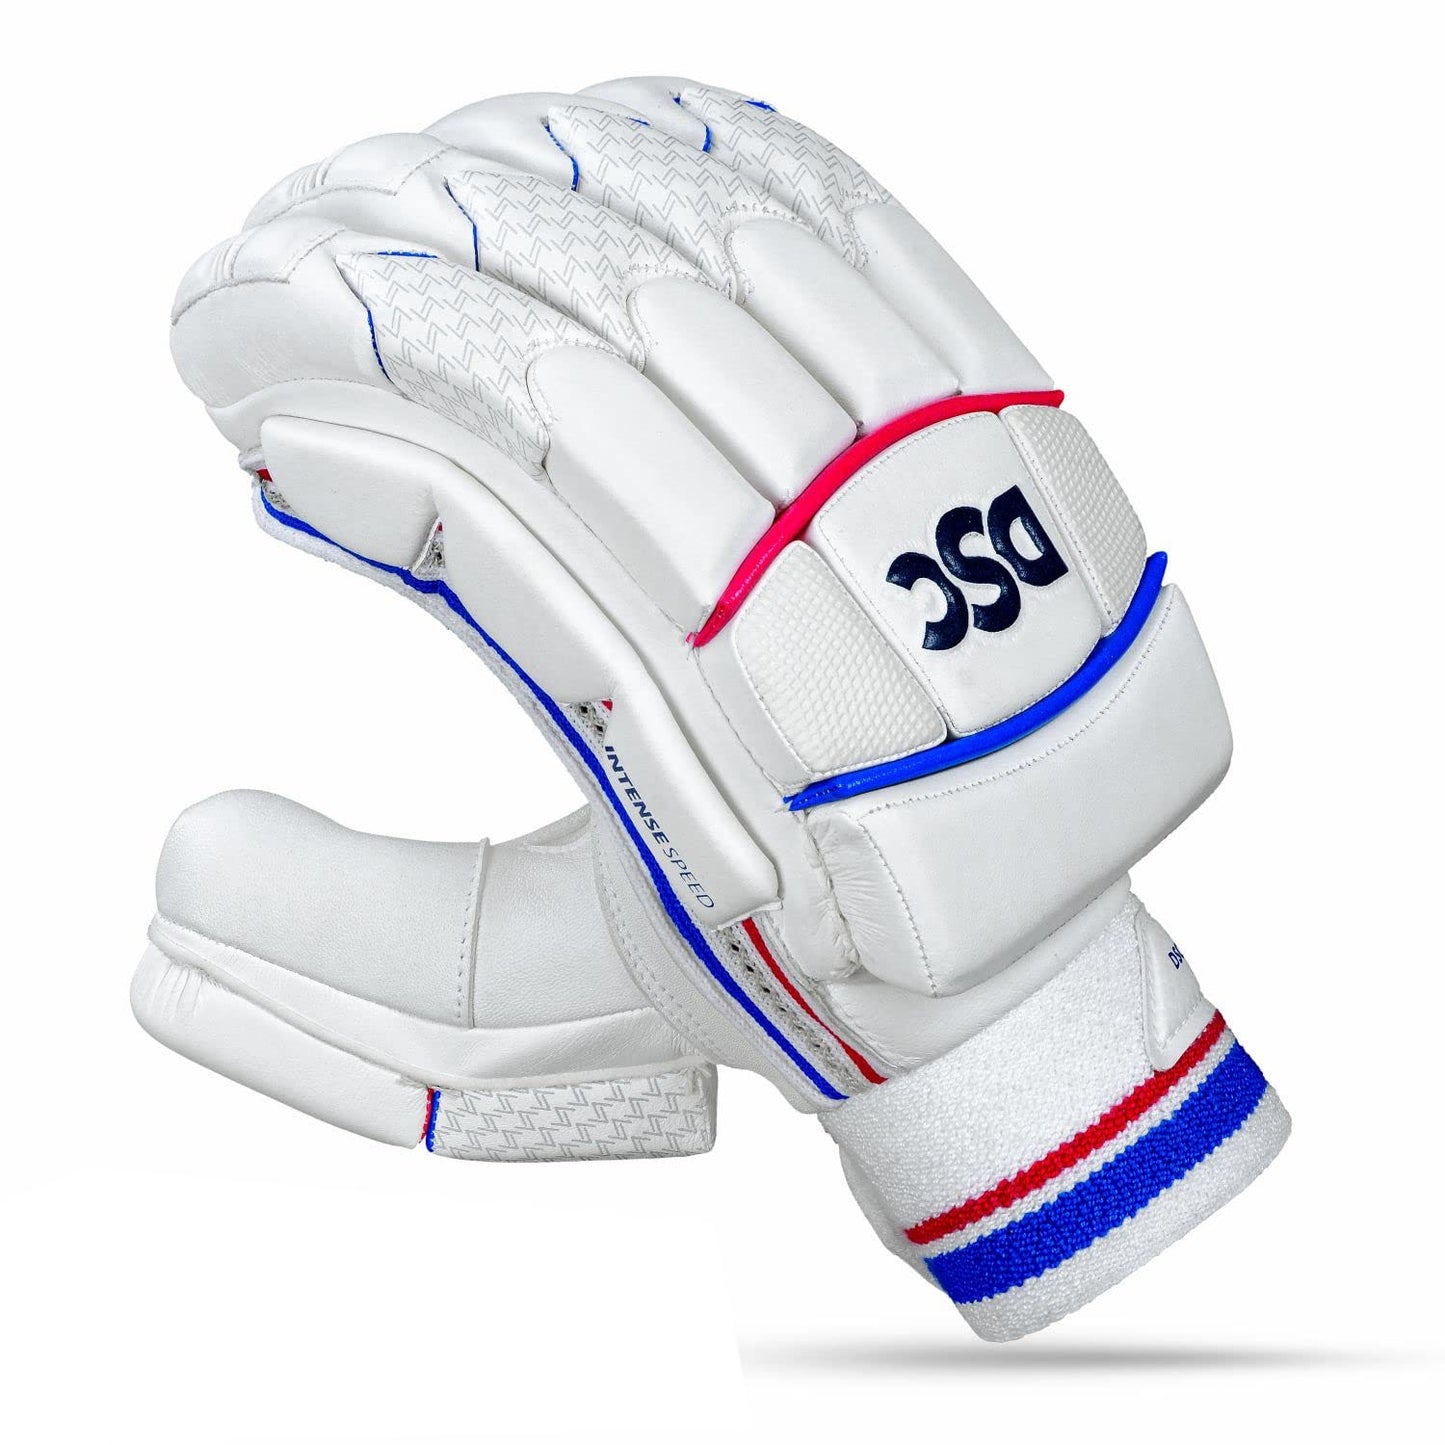 DSC Intense Speed RH Batting Gloves - Best Price online Prokicksports.com